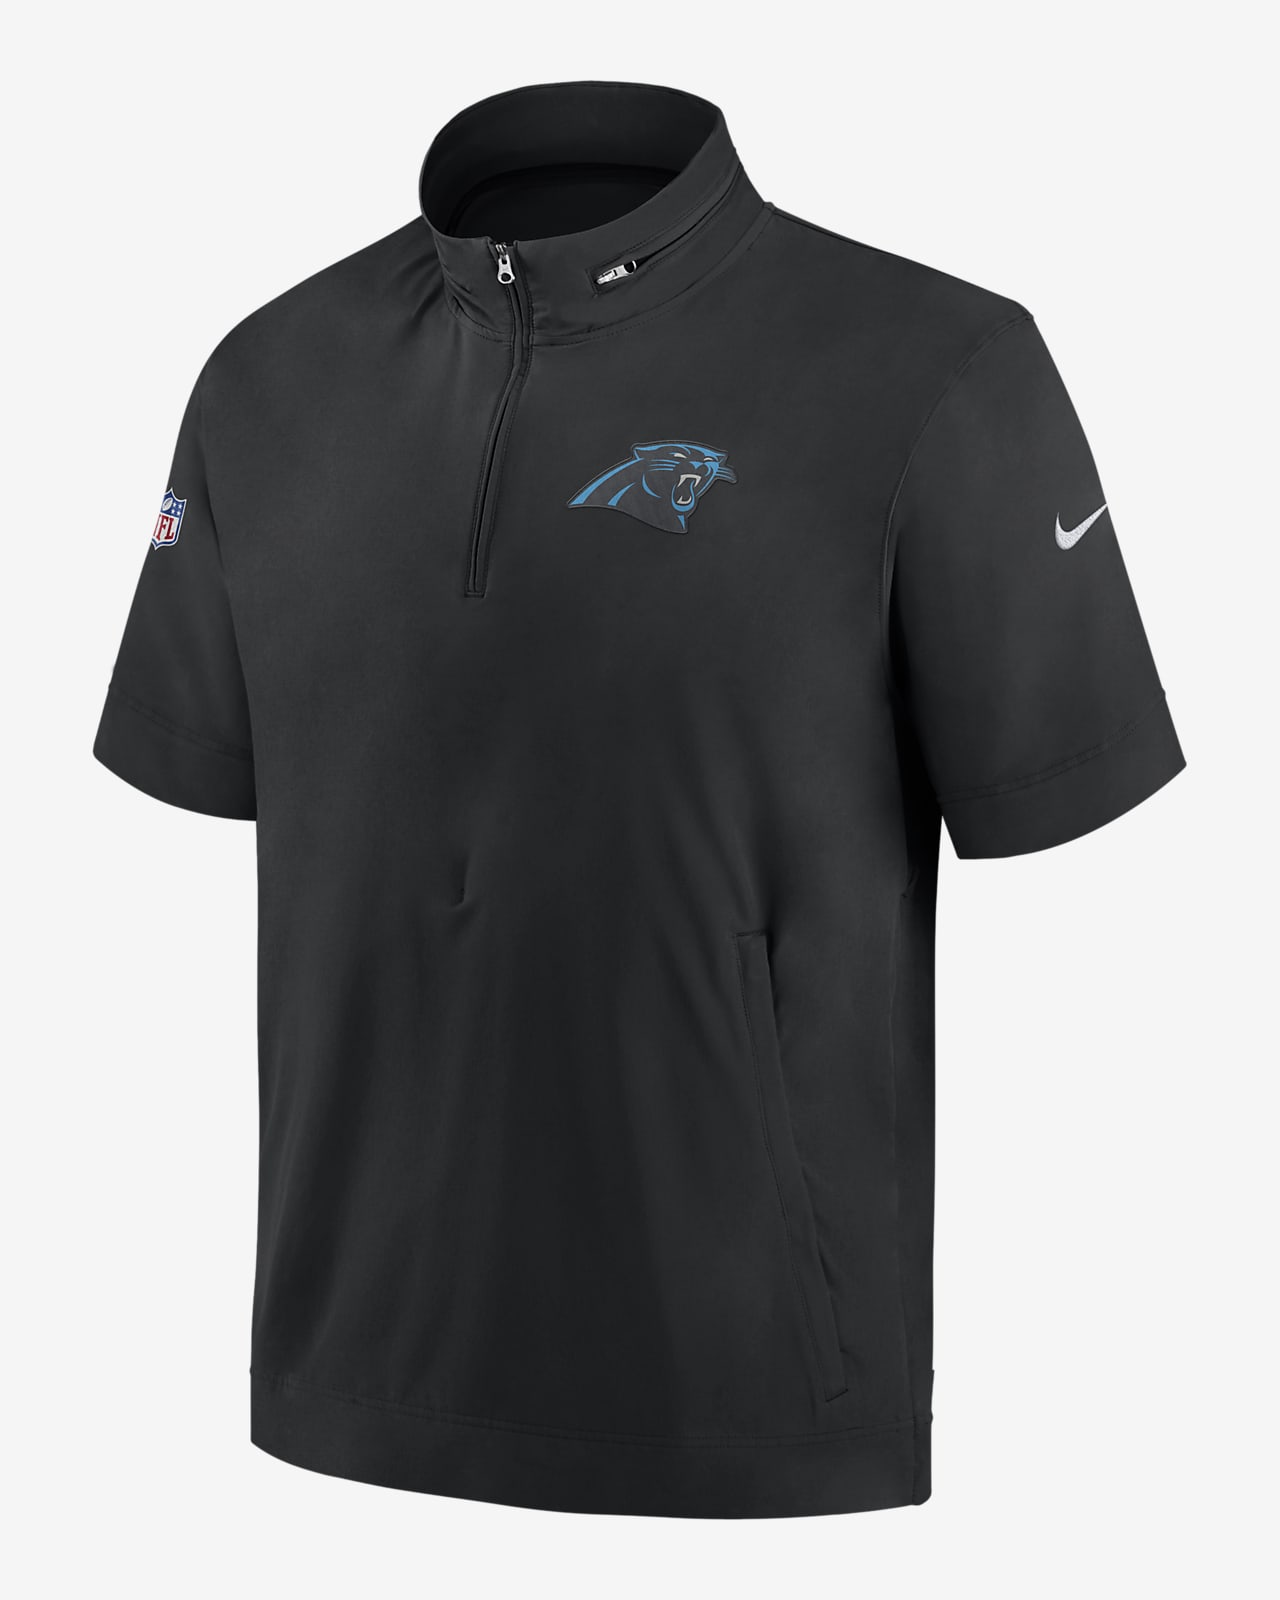 Nike Sideline Coach (NFL Carolina Panthers) Men's Short-Sleeve Jacket